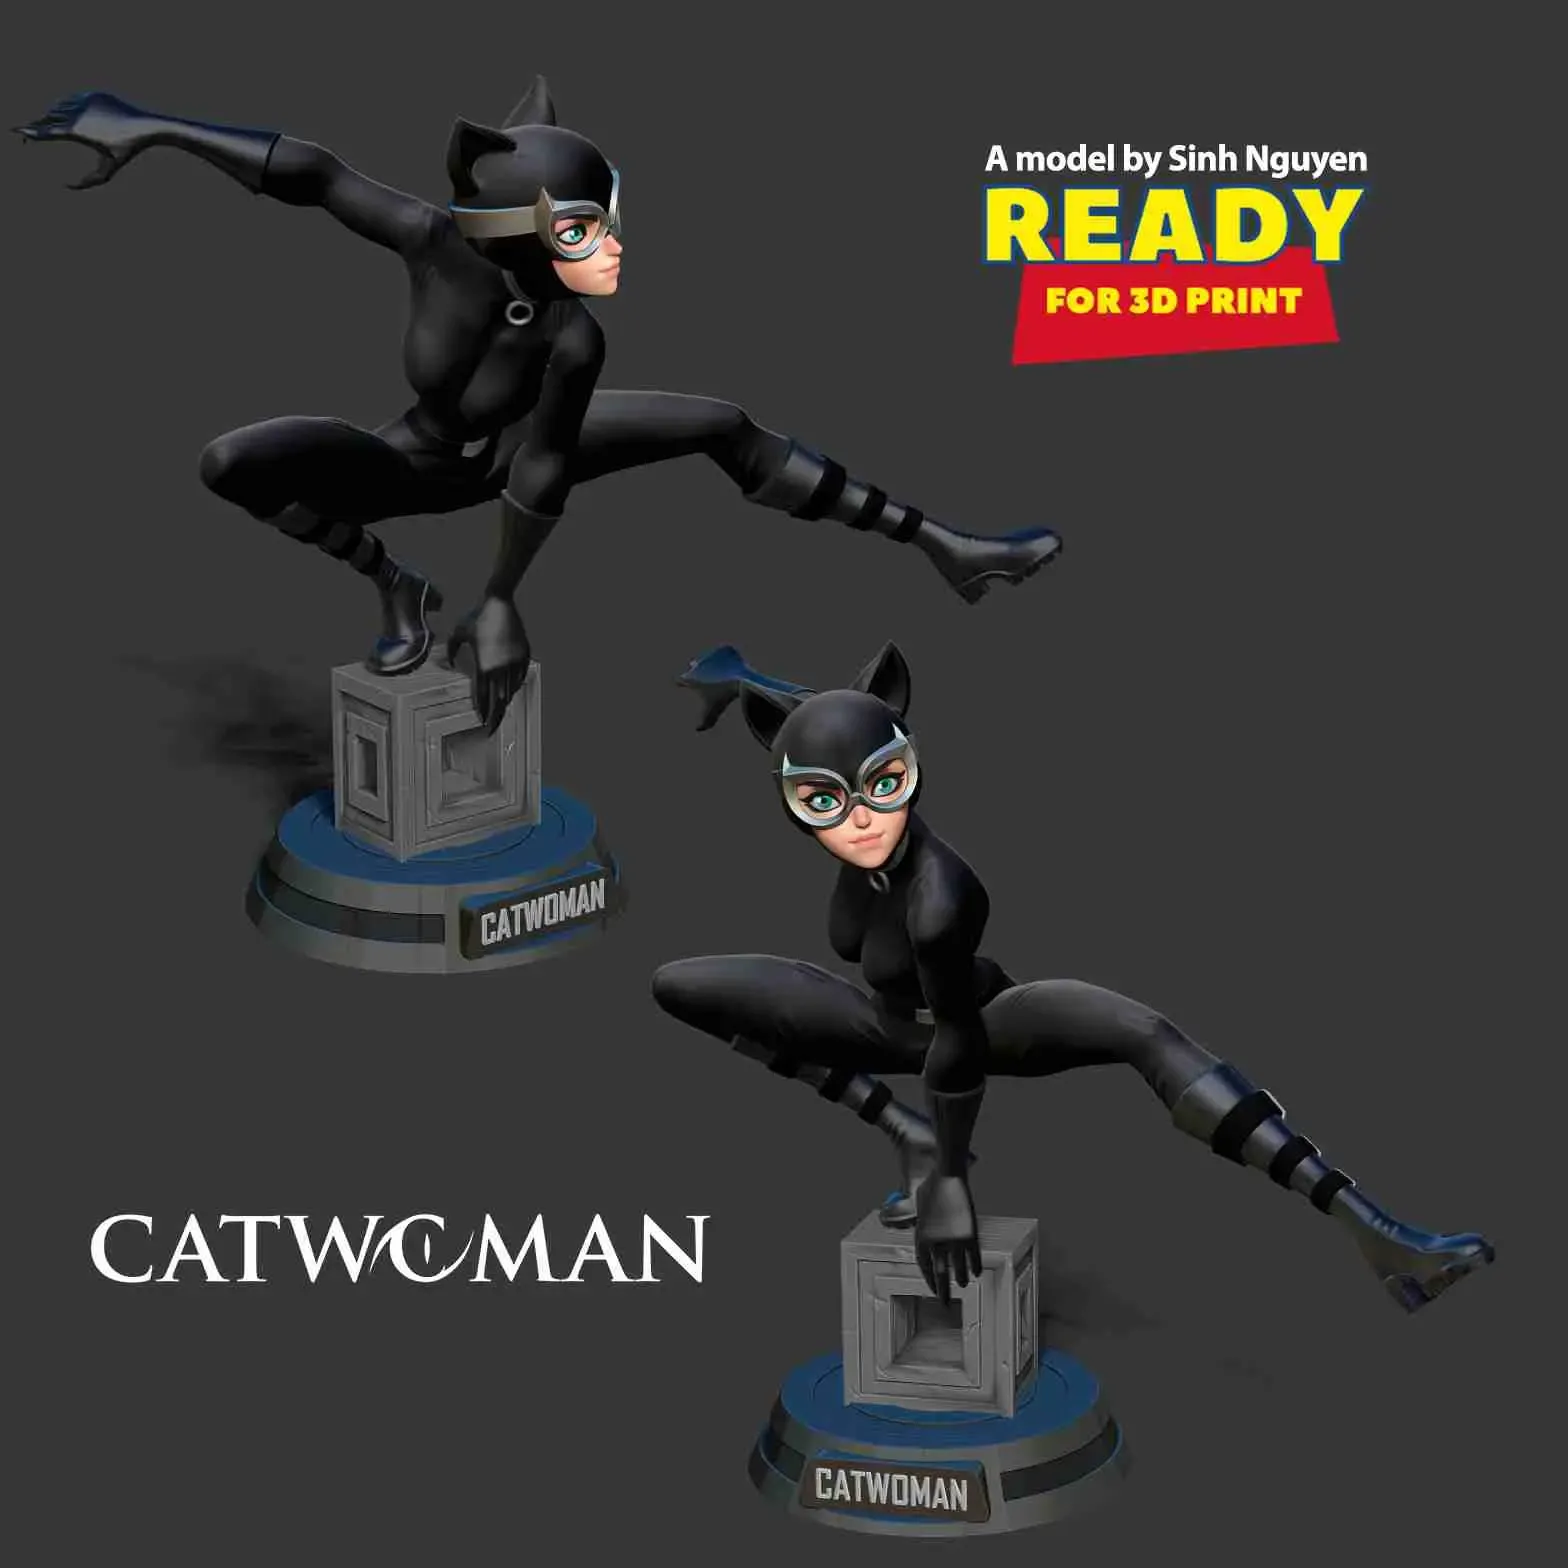 Catwoman stylized